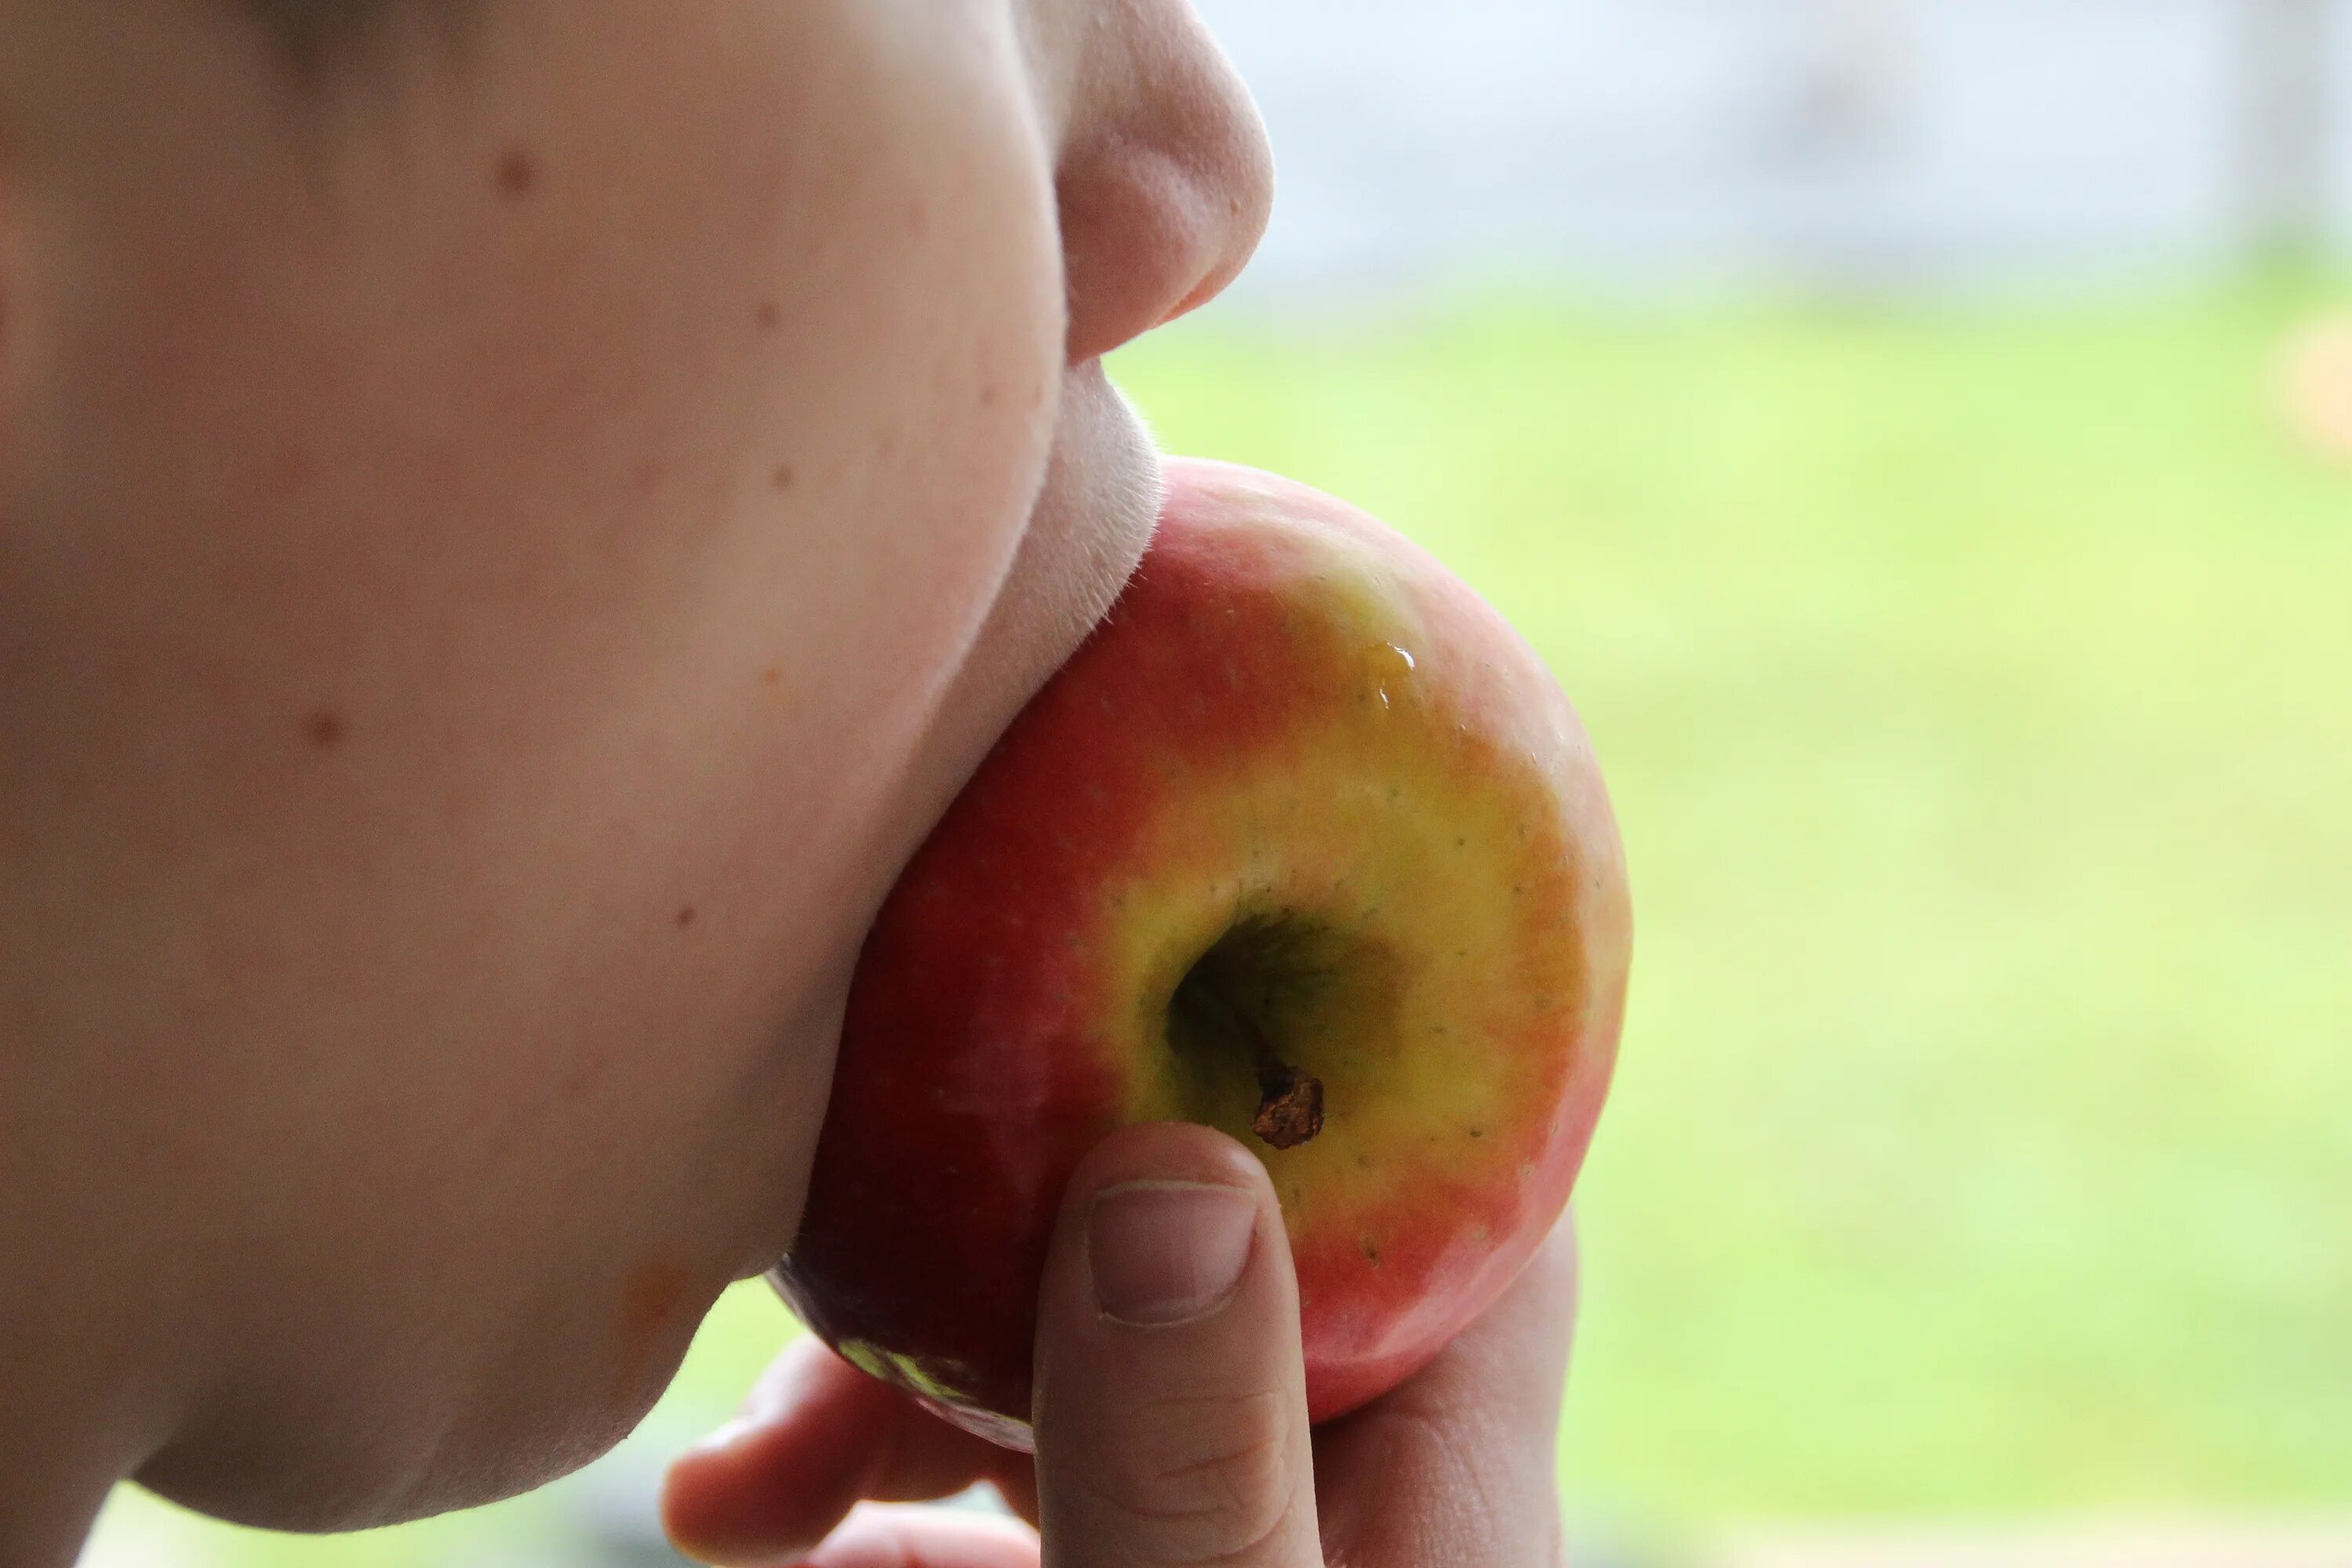 The apple am little. Укус яблока. Кушает яблоко. Поедание яблок. Откушенное яблоко.